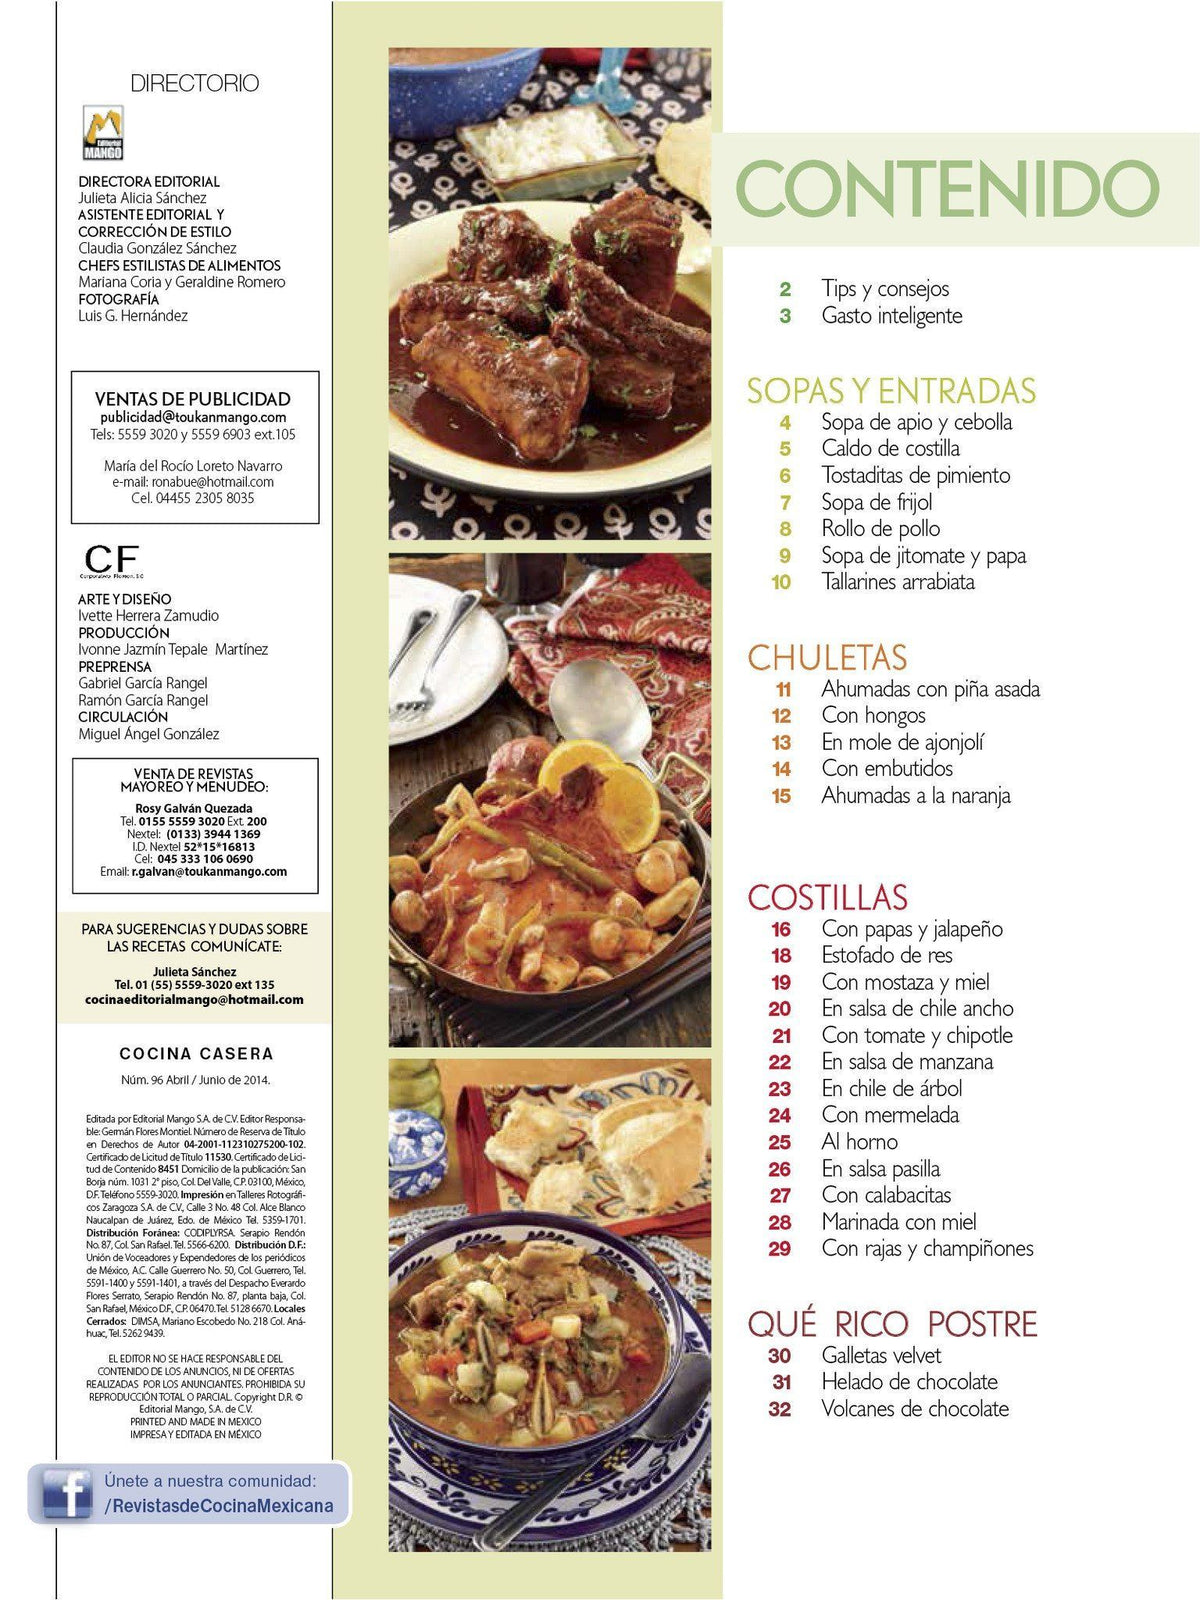 Cocina Casera 96 - Chuletas y costillas paso a paso - Formato Digital - ToukanMango